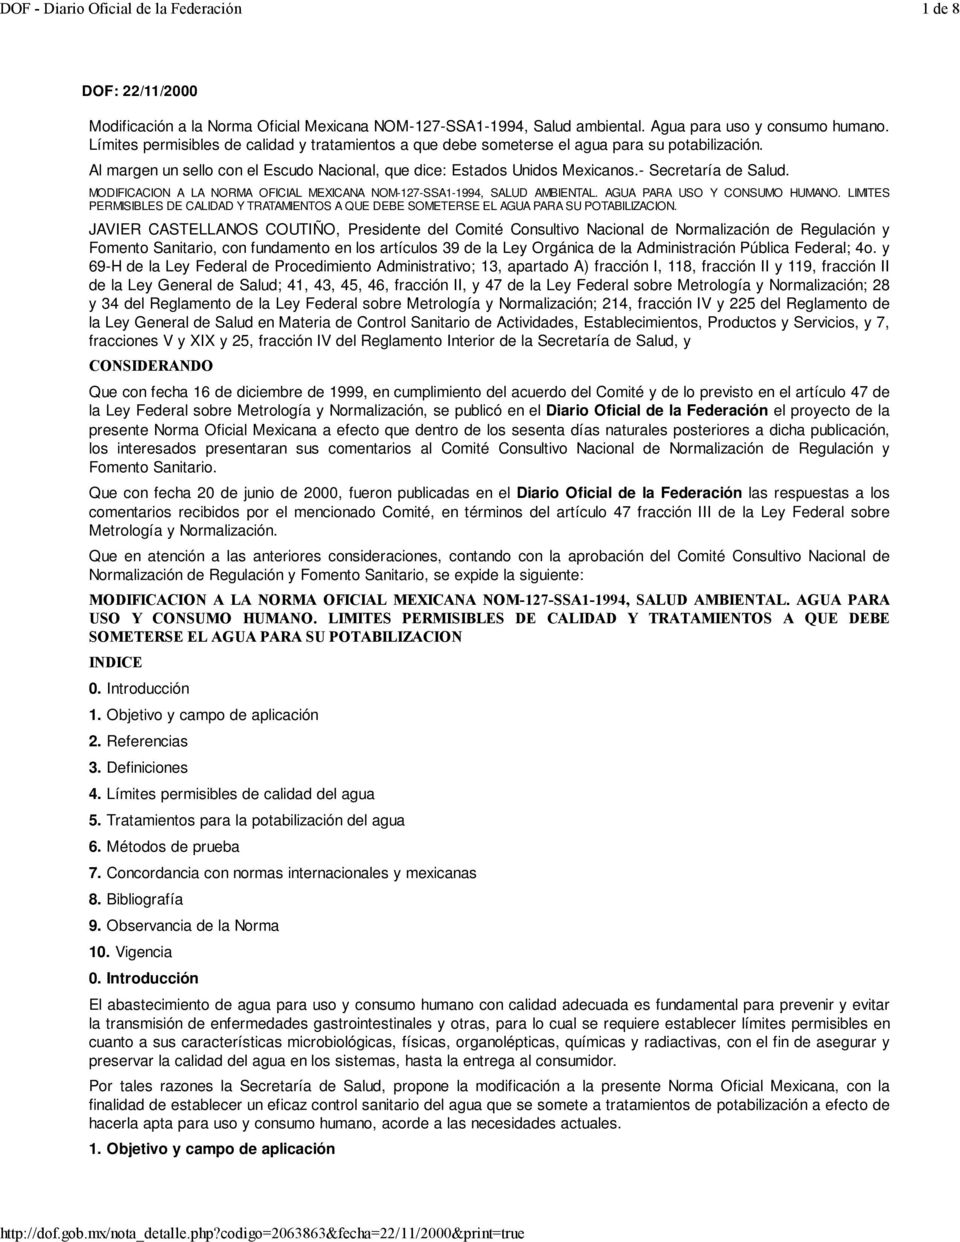 MODIFICACION A LA NORMA OFICIAL MEXICANA NOM-127-SSA1-1994, SALUD AMBIENTAL. AGUA PARA USO Y CONSUMO HUMANO.